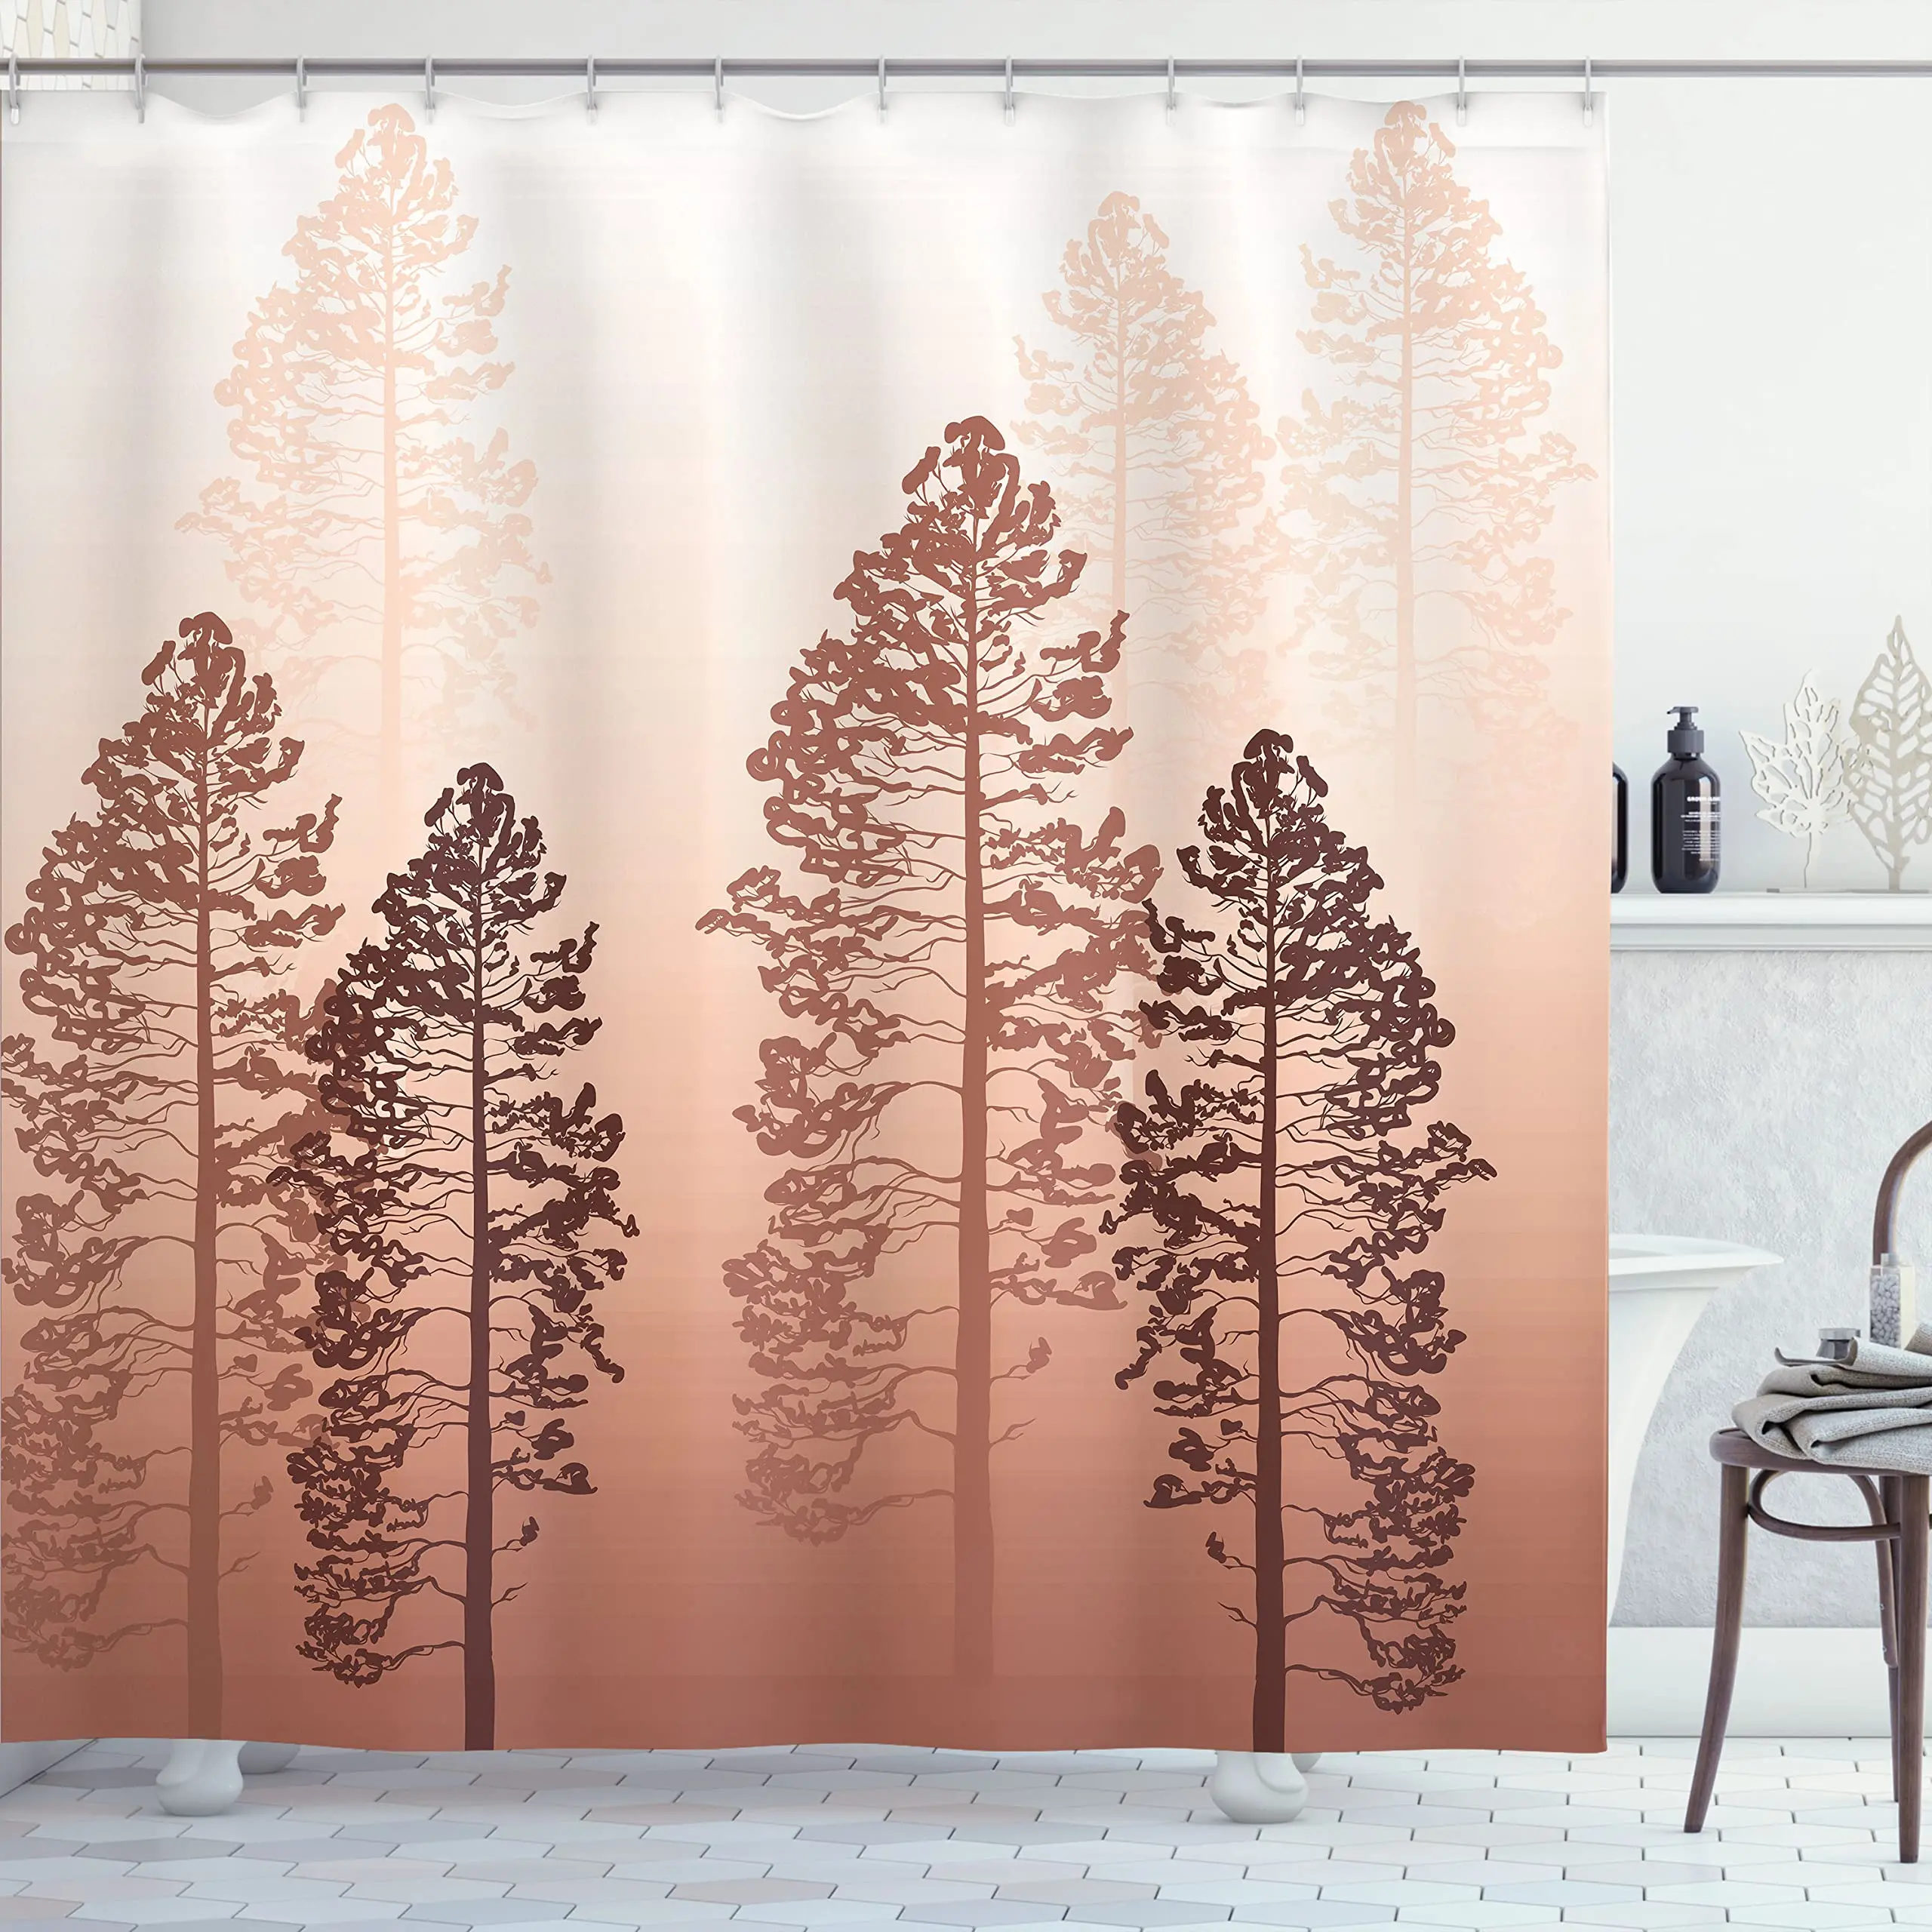 

Занавеска для душа в деревенском стиле, художественное оформление из ткани с изображением деревьев в лесу на туманном фоне дикой природы, набор украшений для ванной комнаты, экраны для ванной комнаты